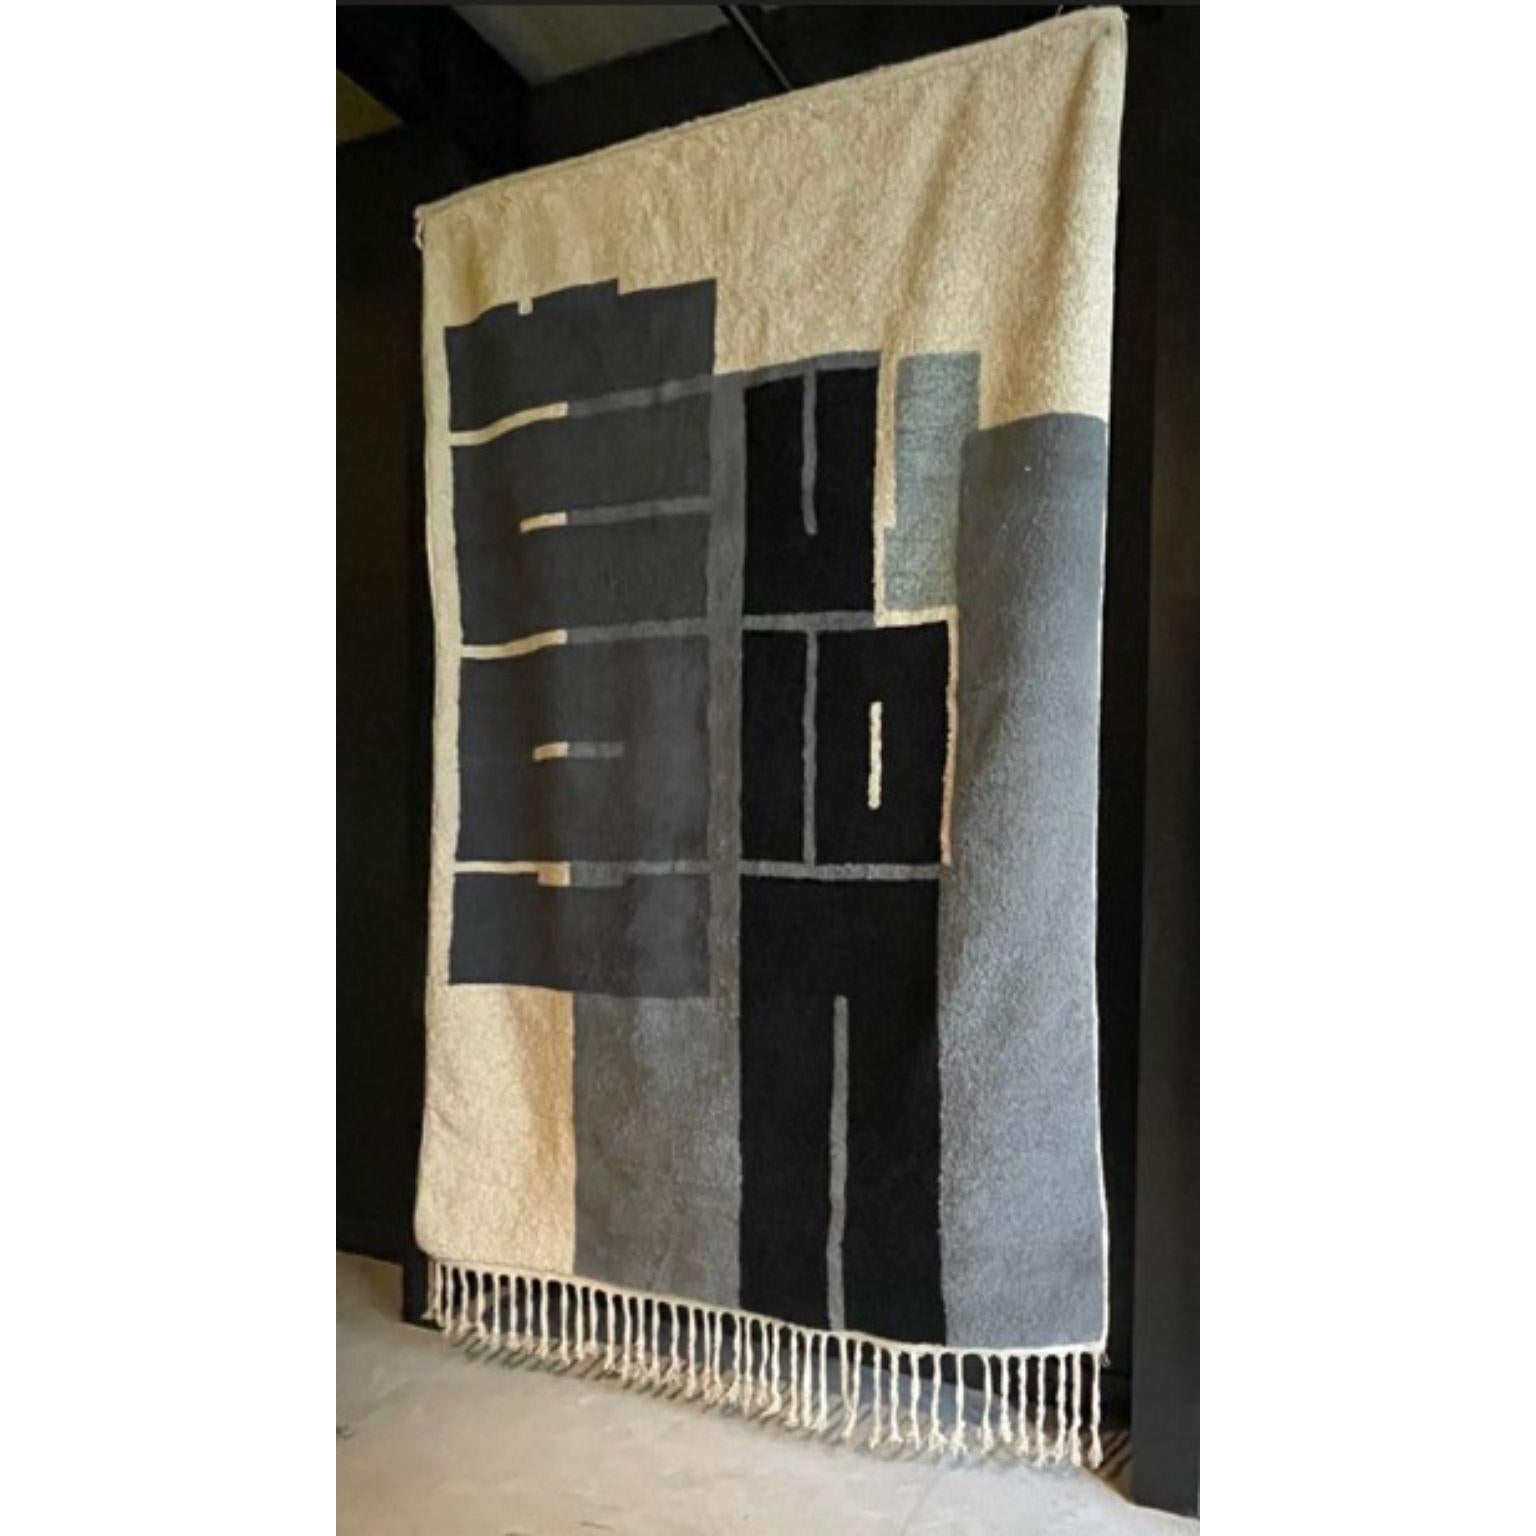 Tapis Fluidité Confusion de Geke Lensink
Dimensions : D205 x H300 cm 
Matériaux : tapis berbère, laine et fait à la main au Maroc 

Après avoir obtenu son diplôme de l'université des arts ArtEZ, Geke Lensink a commencé à travailler en tant